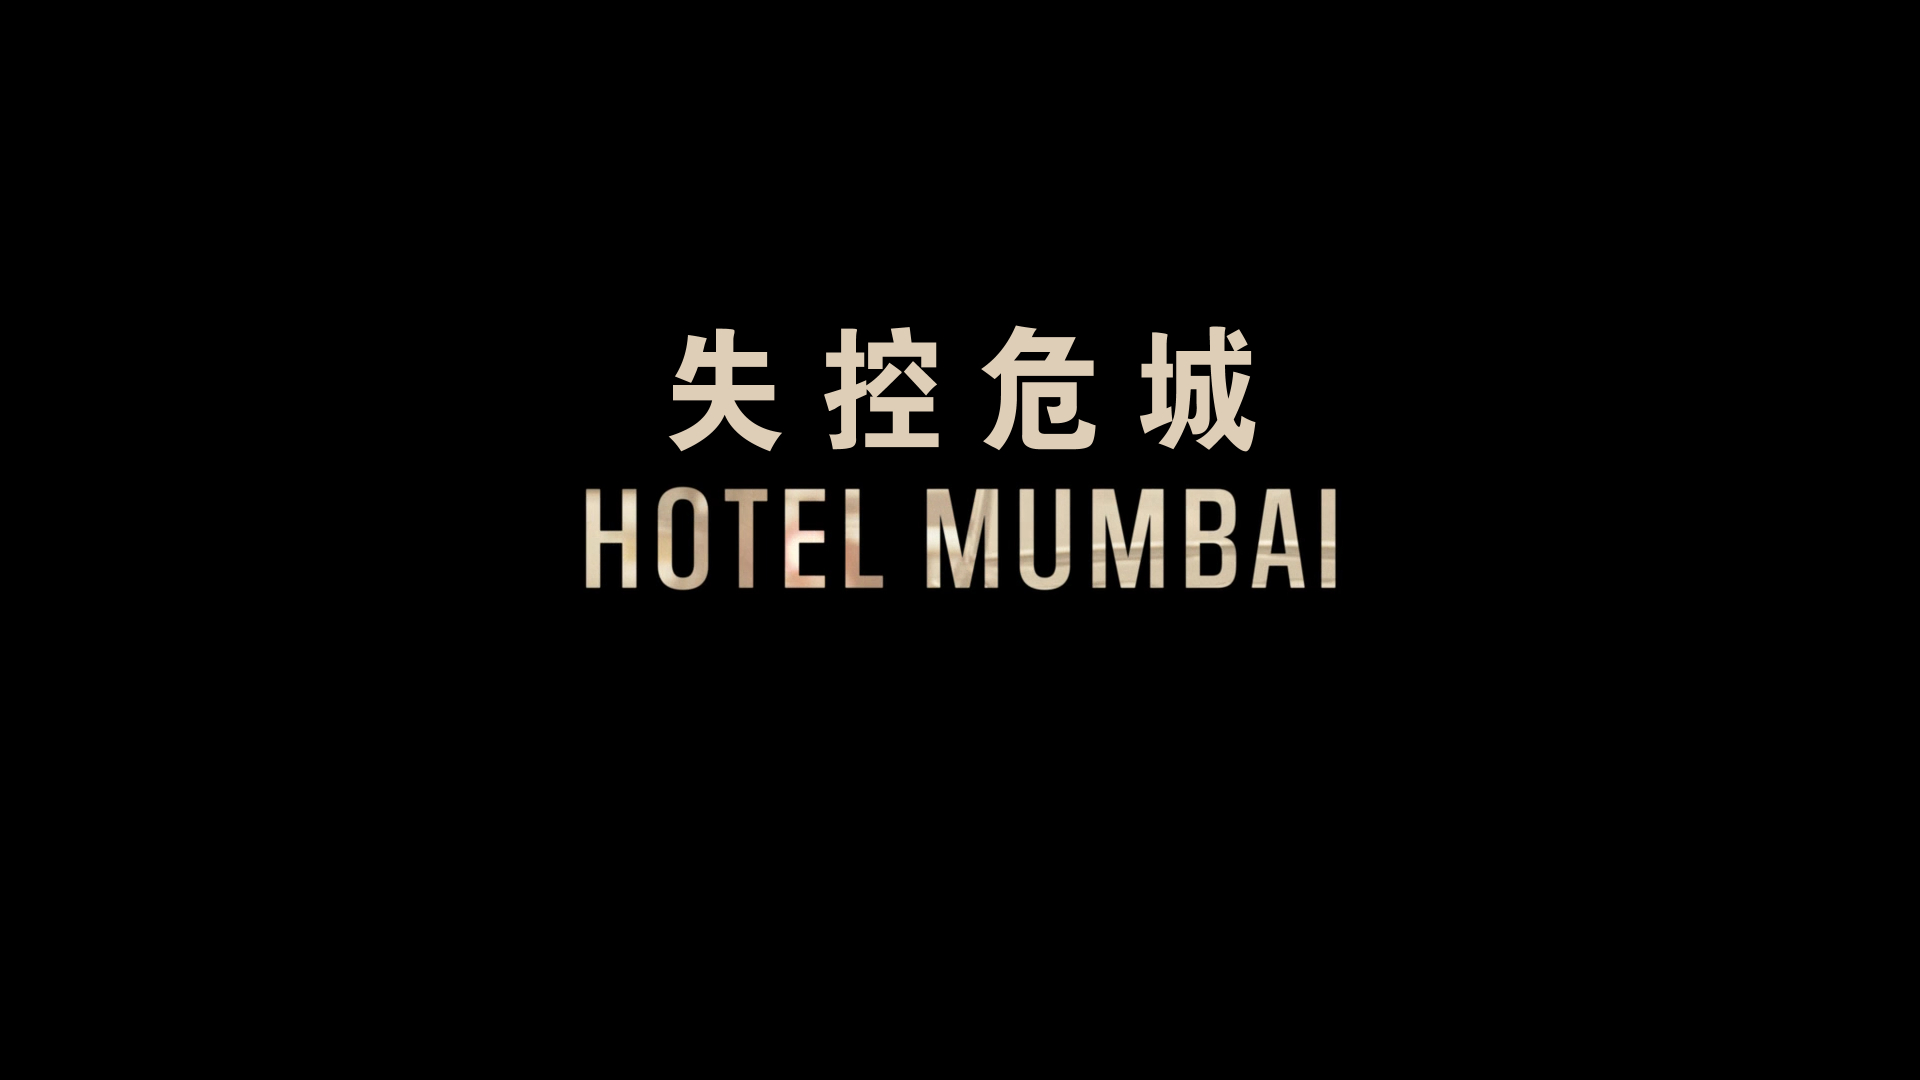 孟买酒店 / 失控危城(台) *修复版* 【DIY简繁+简繁英双语特效字幕】 Hotel Mumbai 2018 1080p REPACK Blu-ray AVC DTS-HD MA5.1-lingfriendly@OurBits    [37.49 GB ]-3.jpg